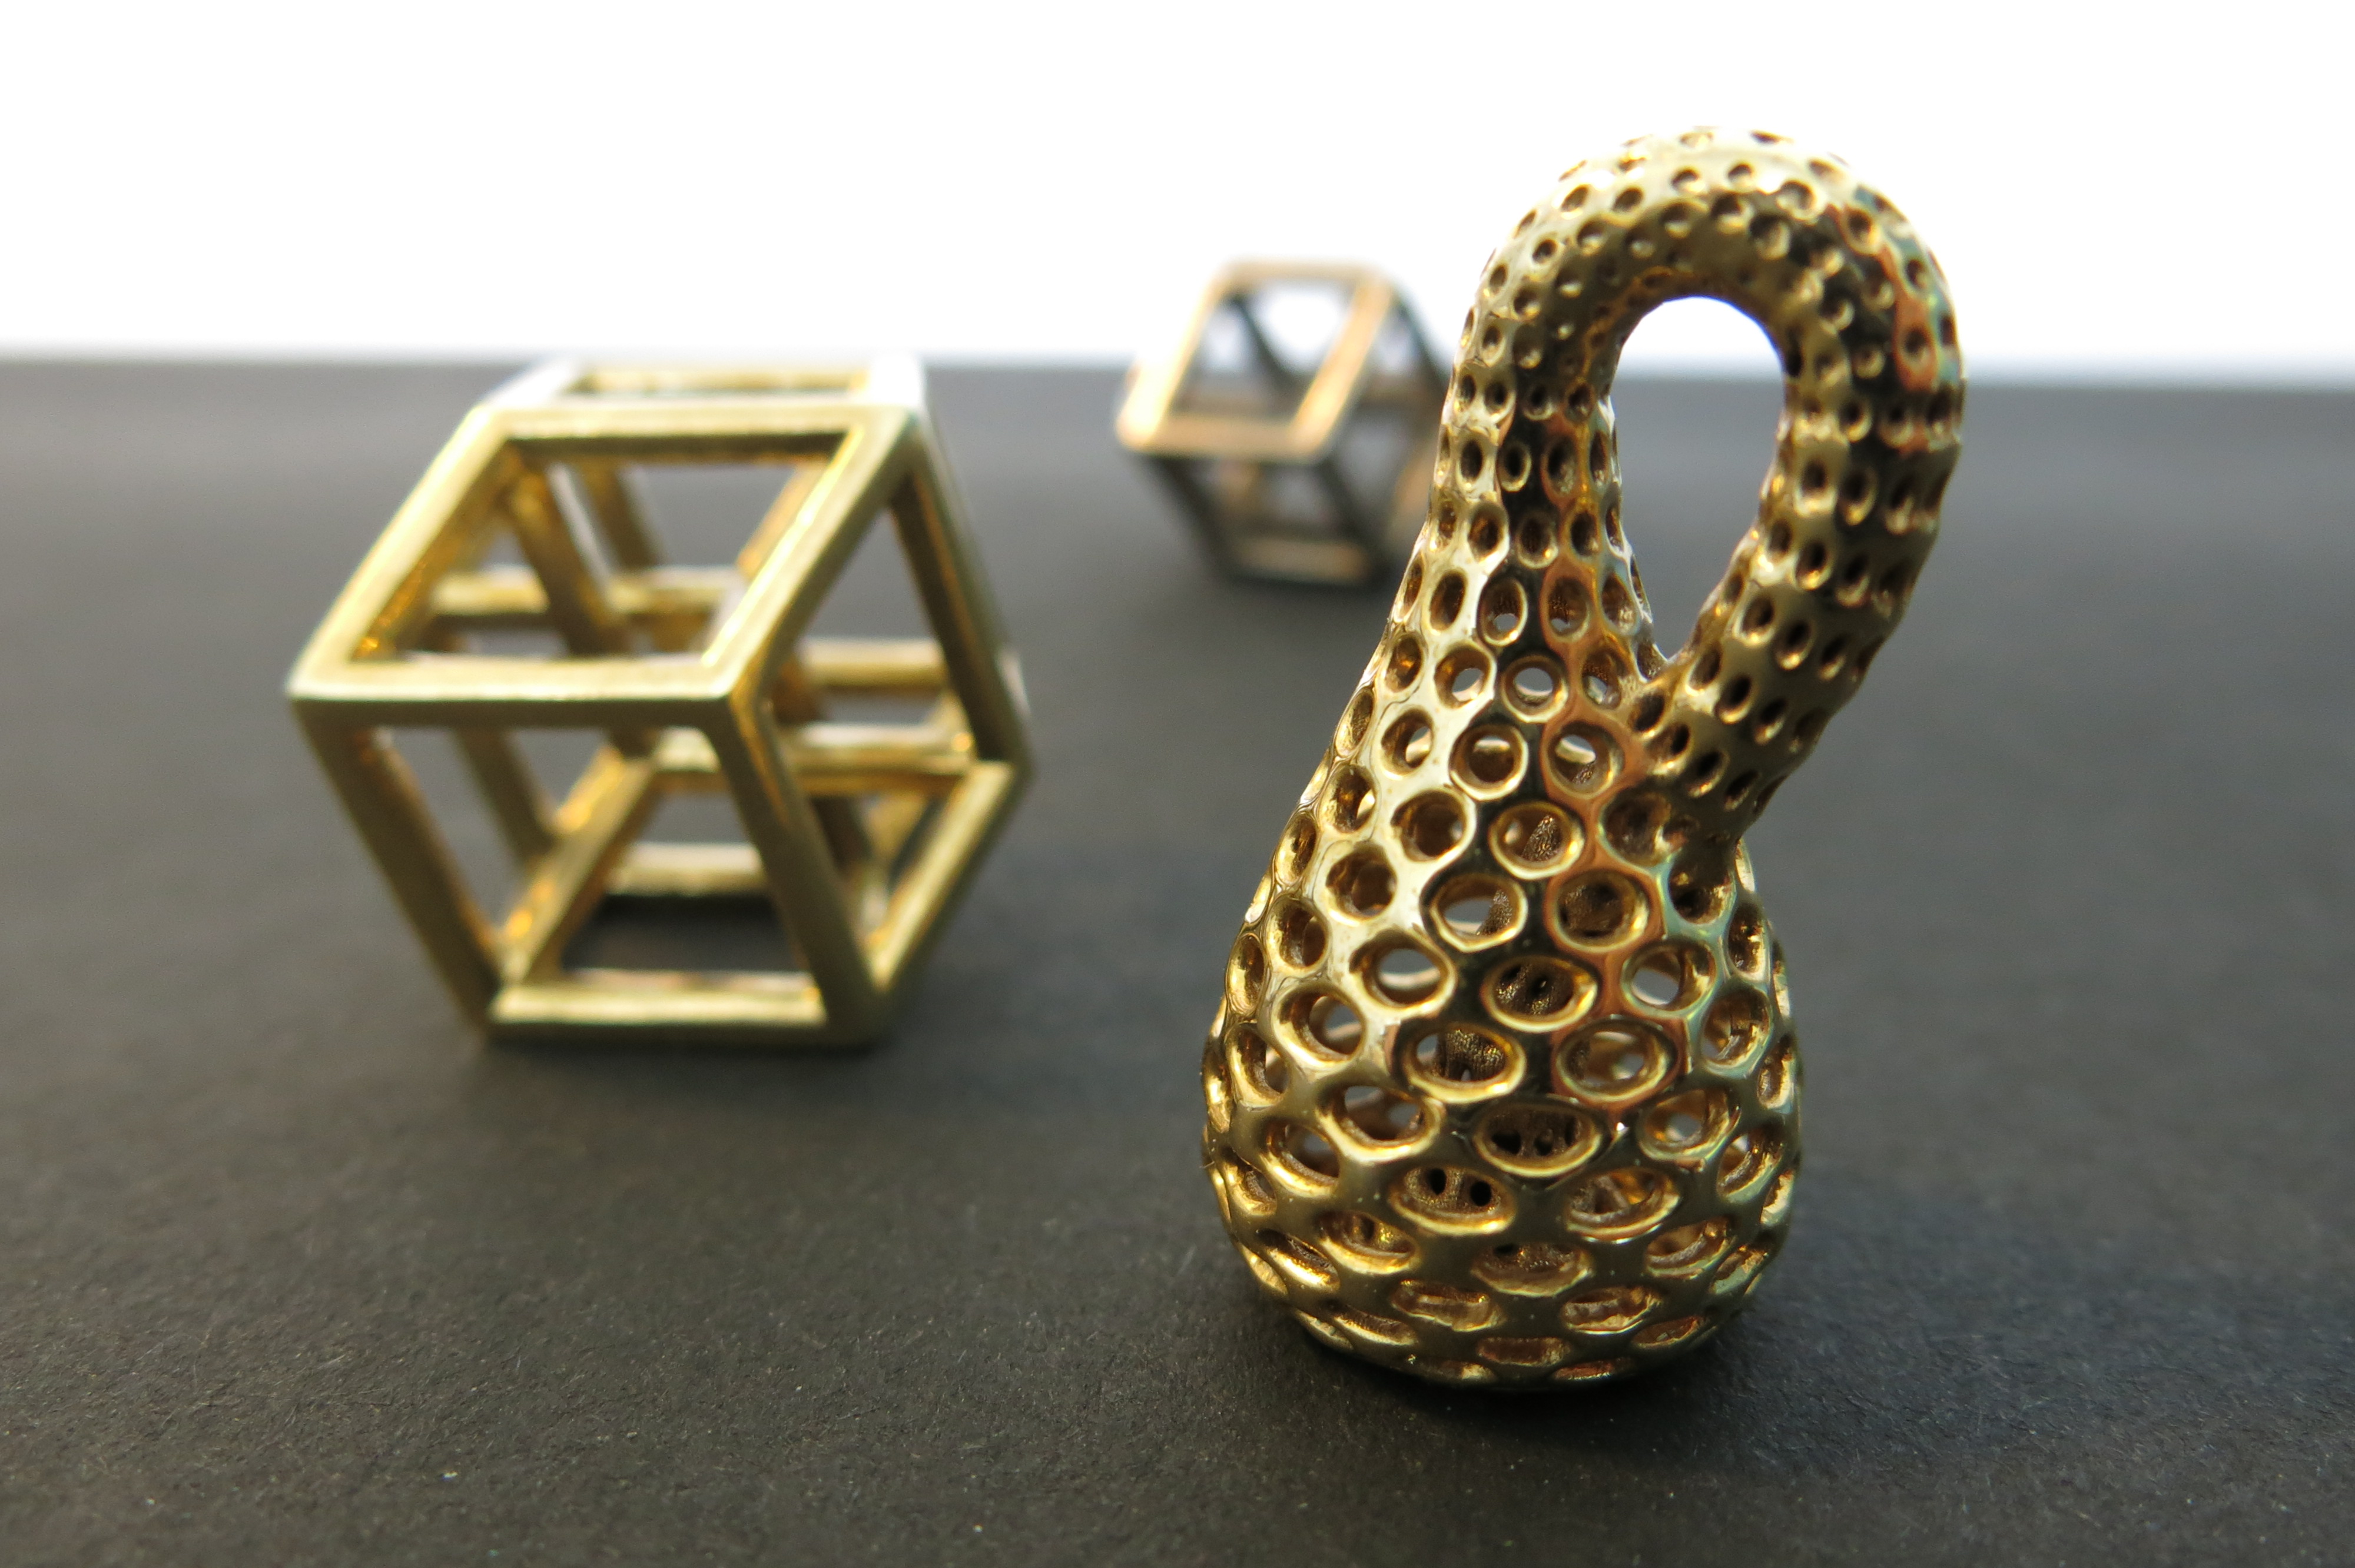  3D  Print Mathematical Objects  Escher s Dreams 3D  Printed 